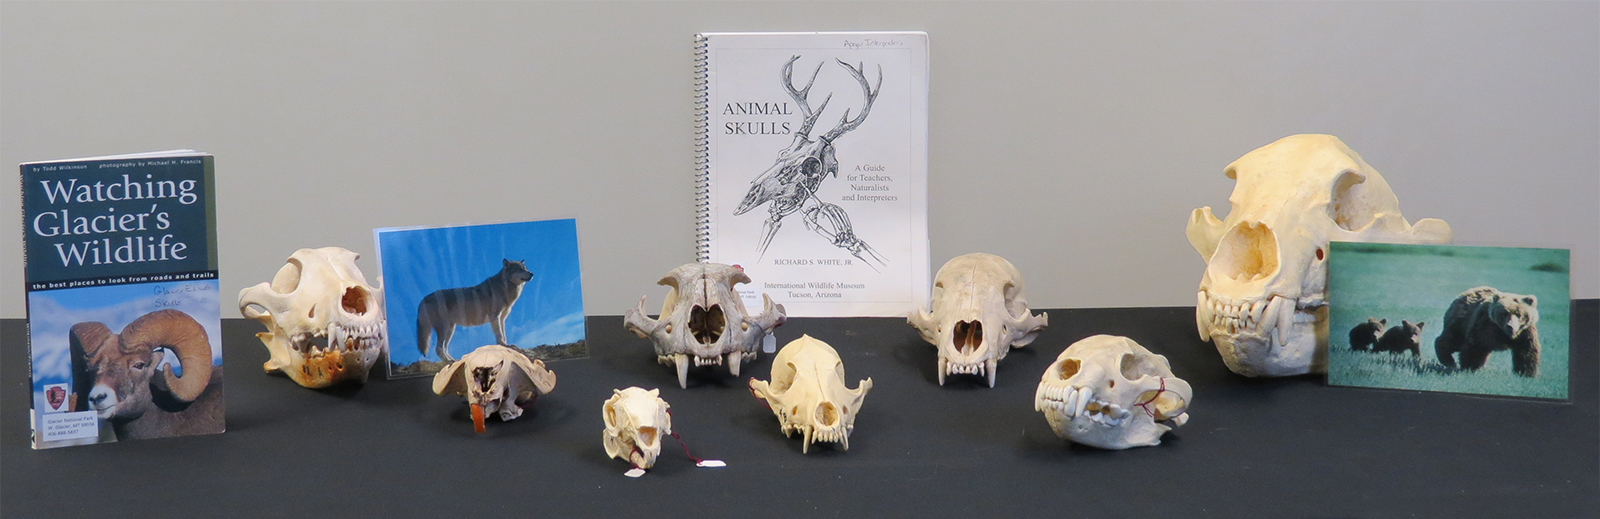 carnivore skull identification